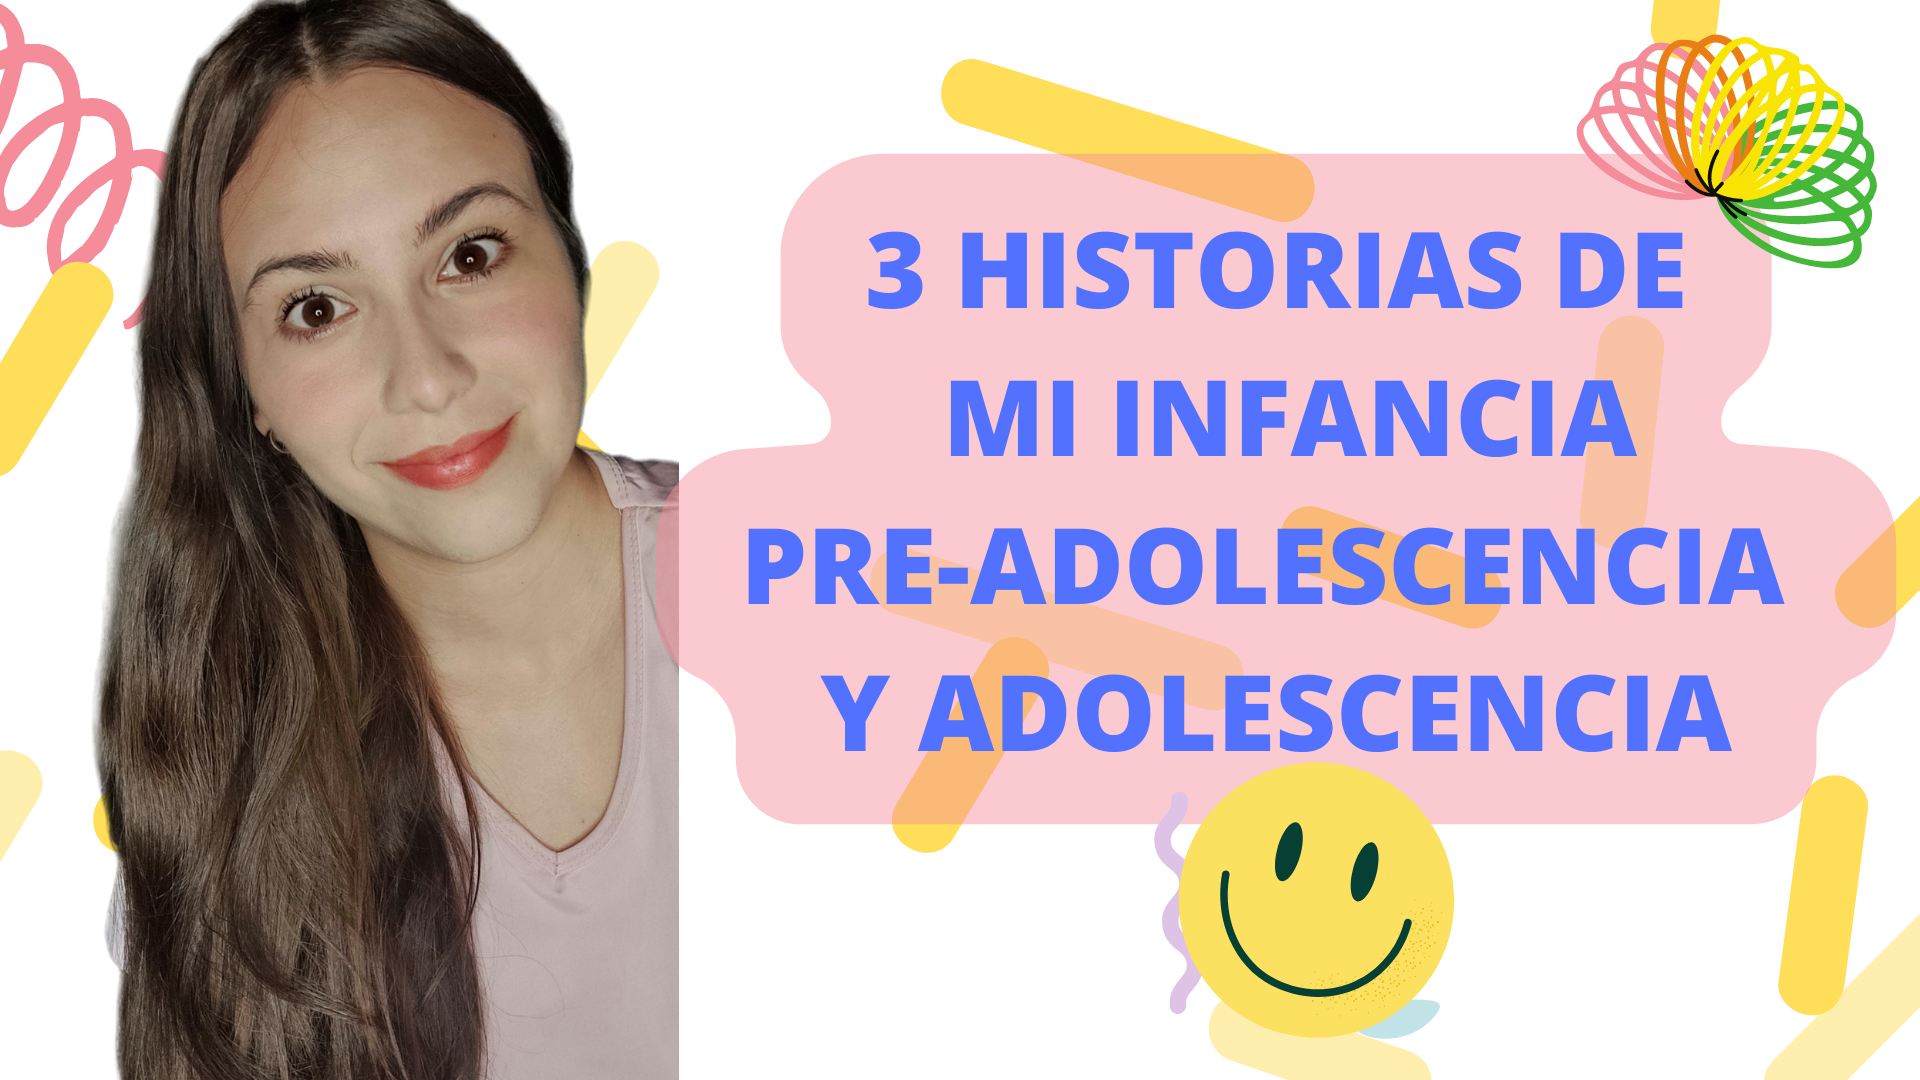 3 HISTORIAS DE MI INFANCIA PRE-ADOLESCENCIA Y ADOLESCENCIA.png